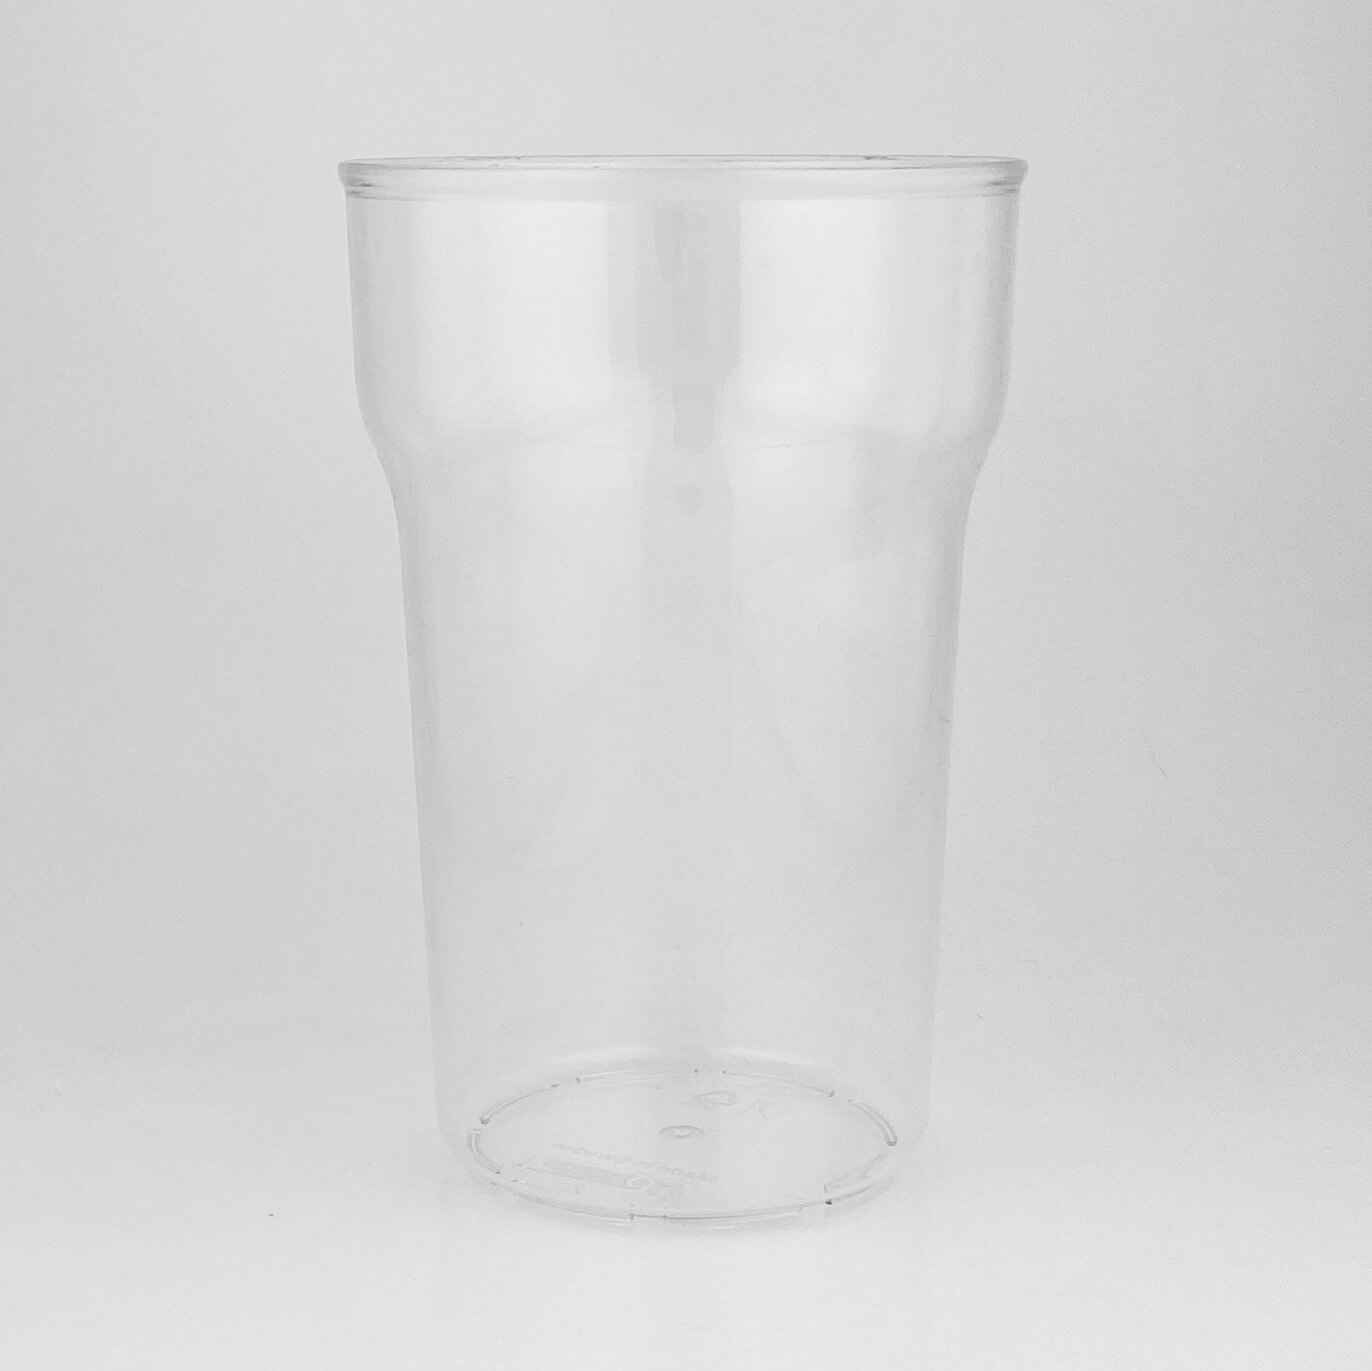 Ringo CUP 568ml transparent round